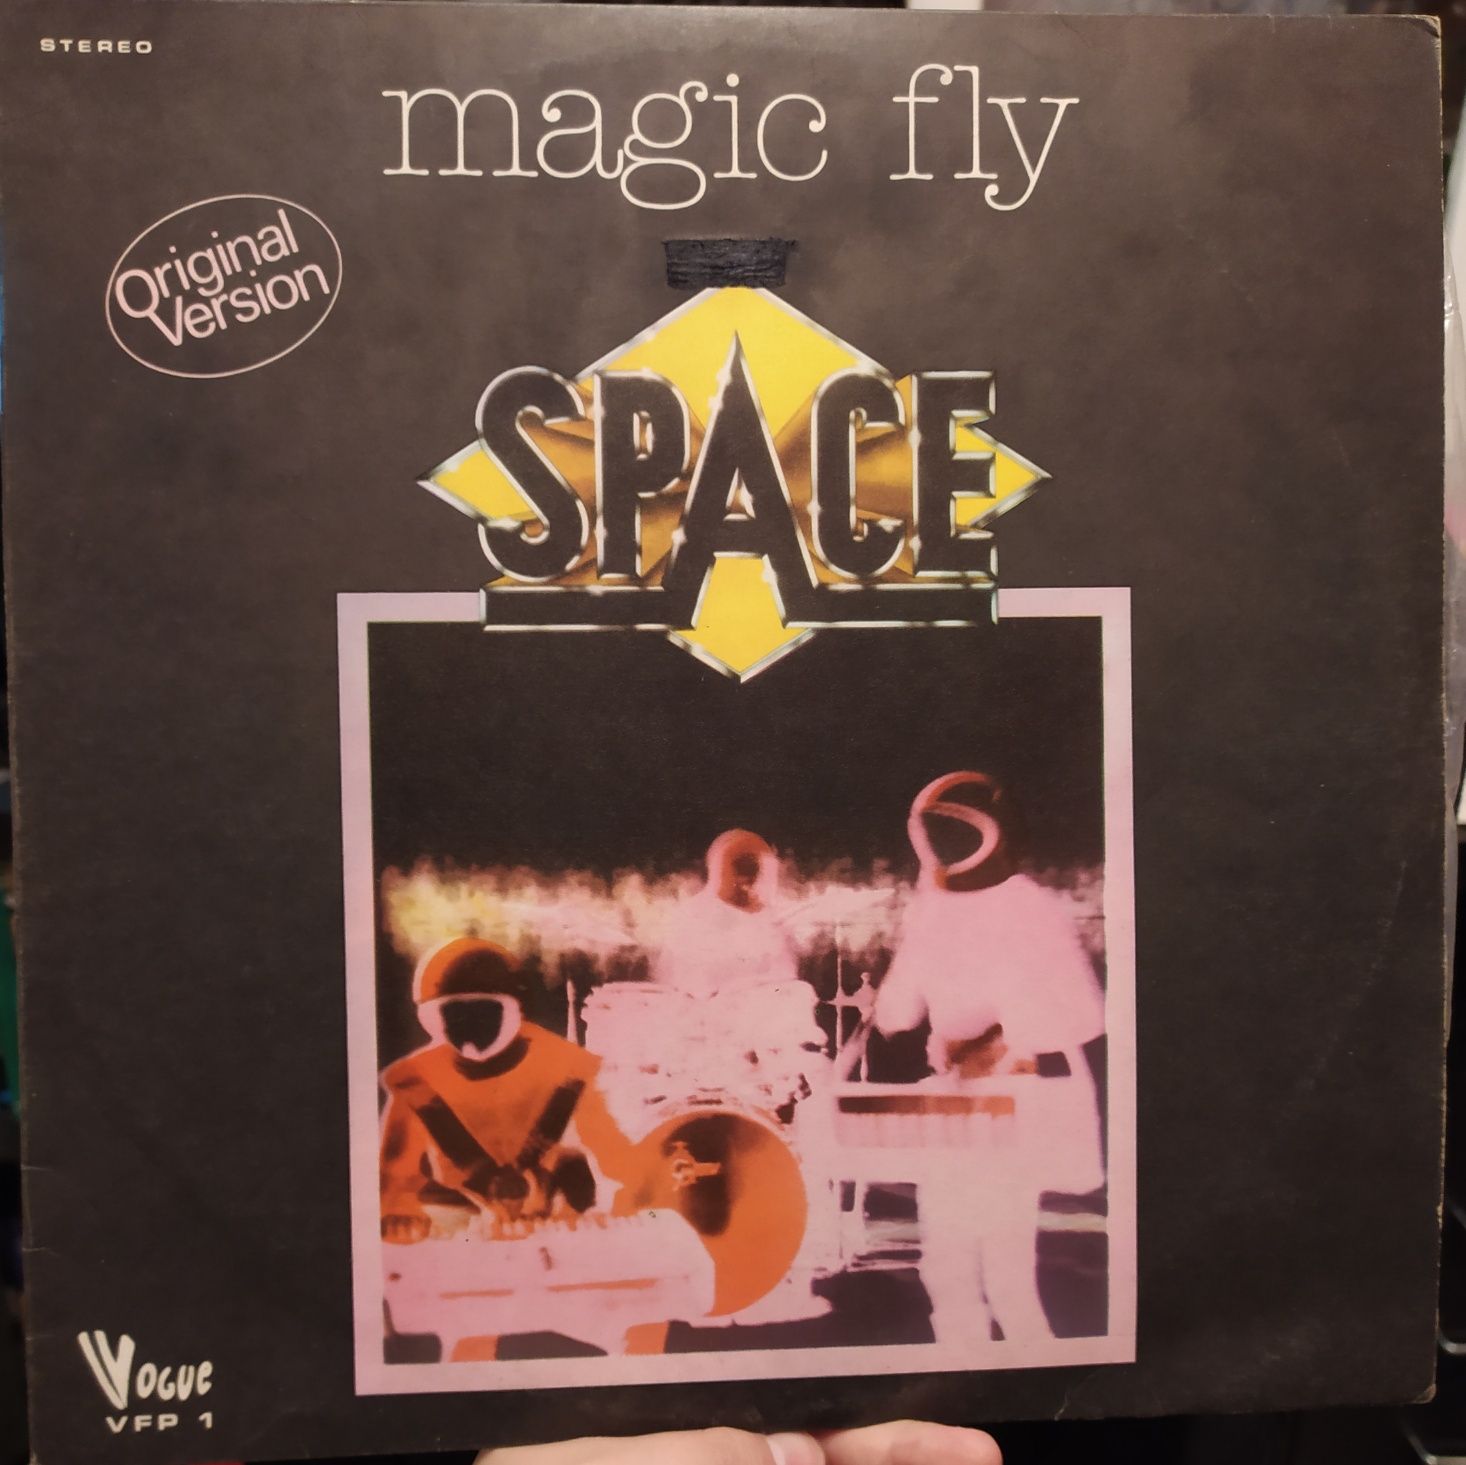 Vinil de Space - Magic Fly